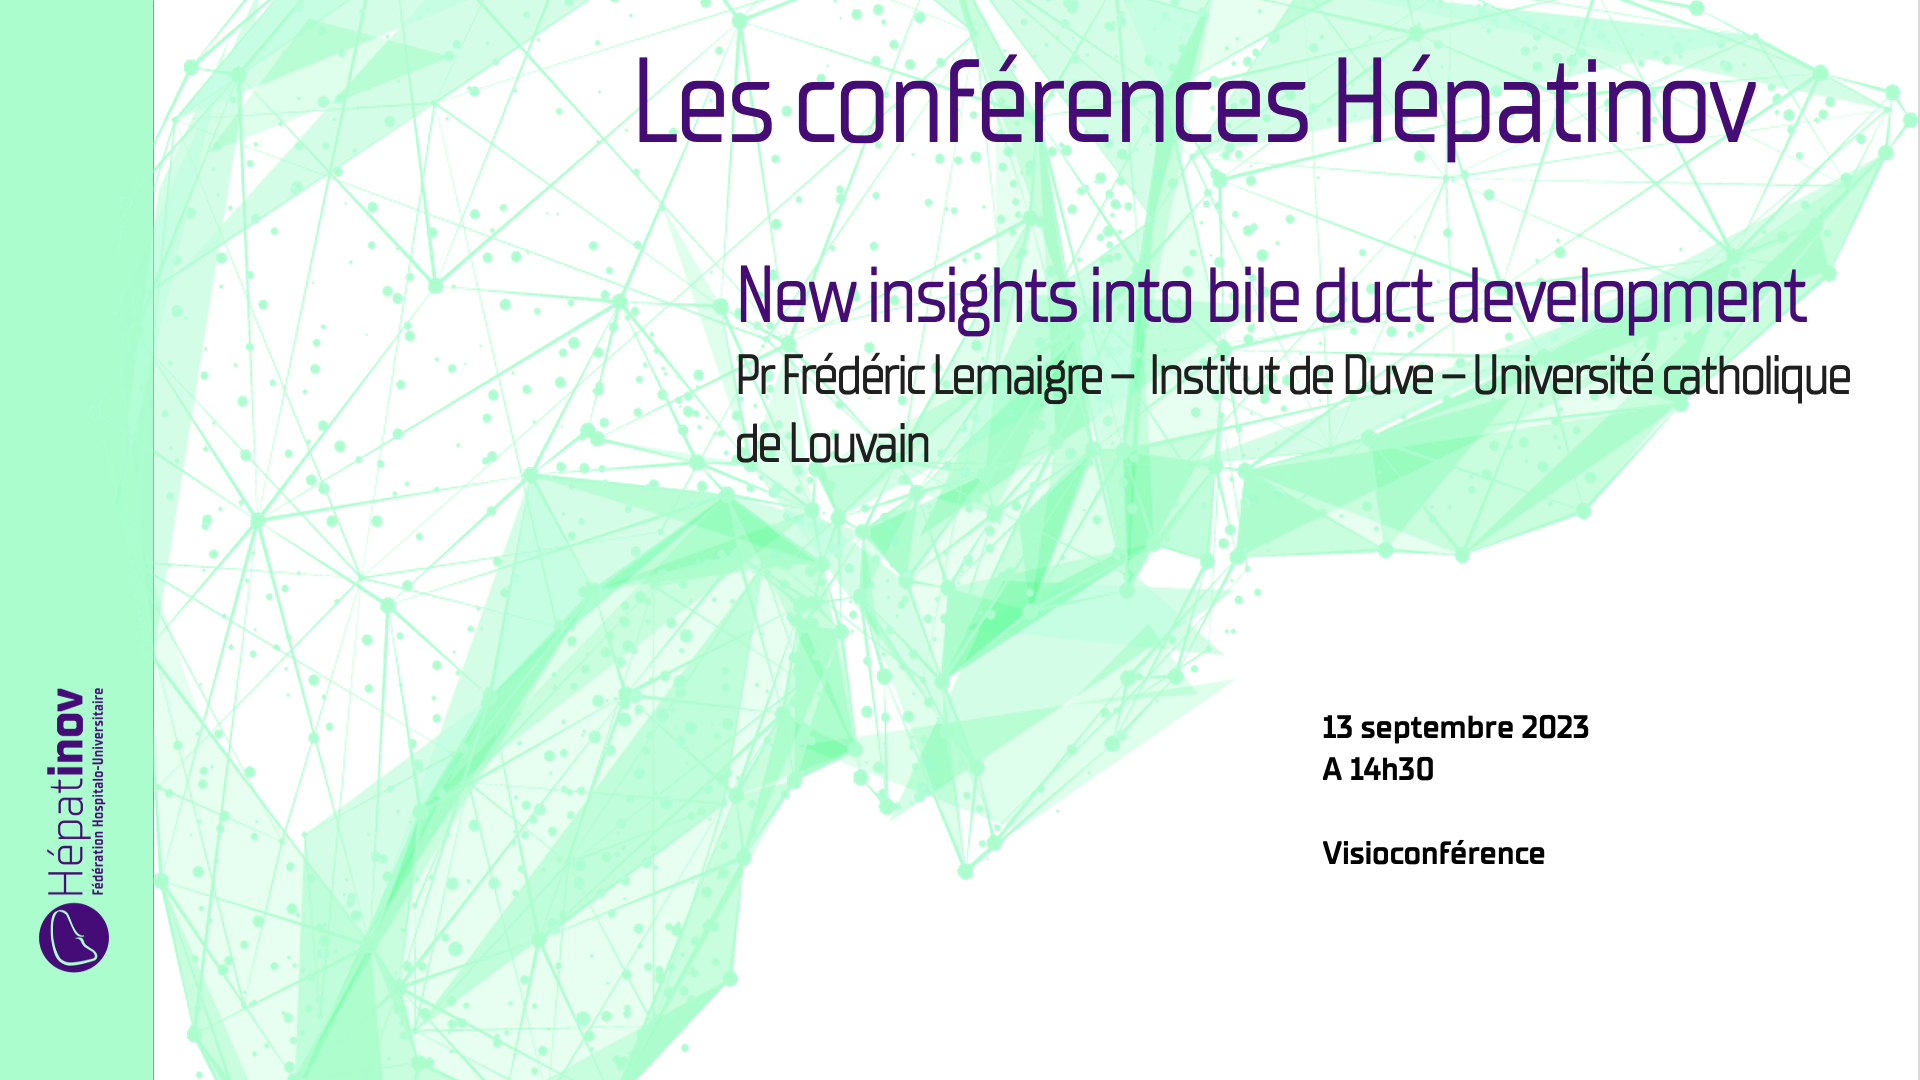 Les conférences Hépatinov - New insights into bile duct development - 13 septembre 2023